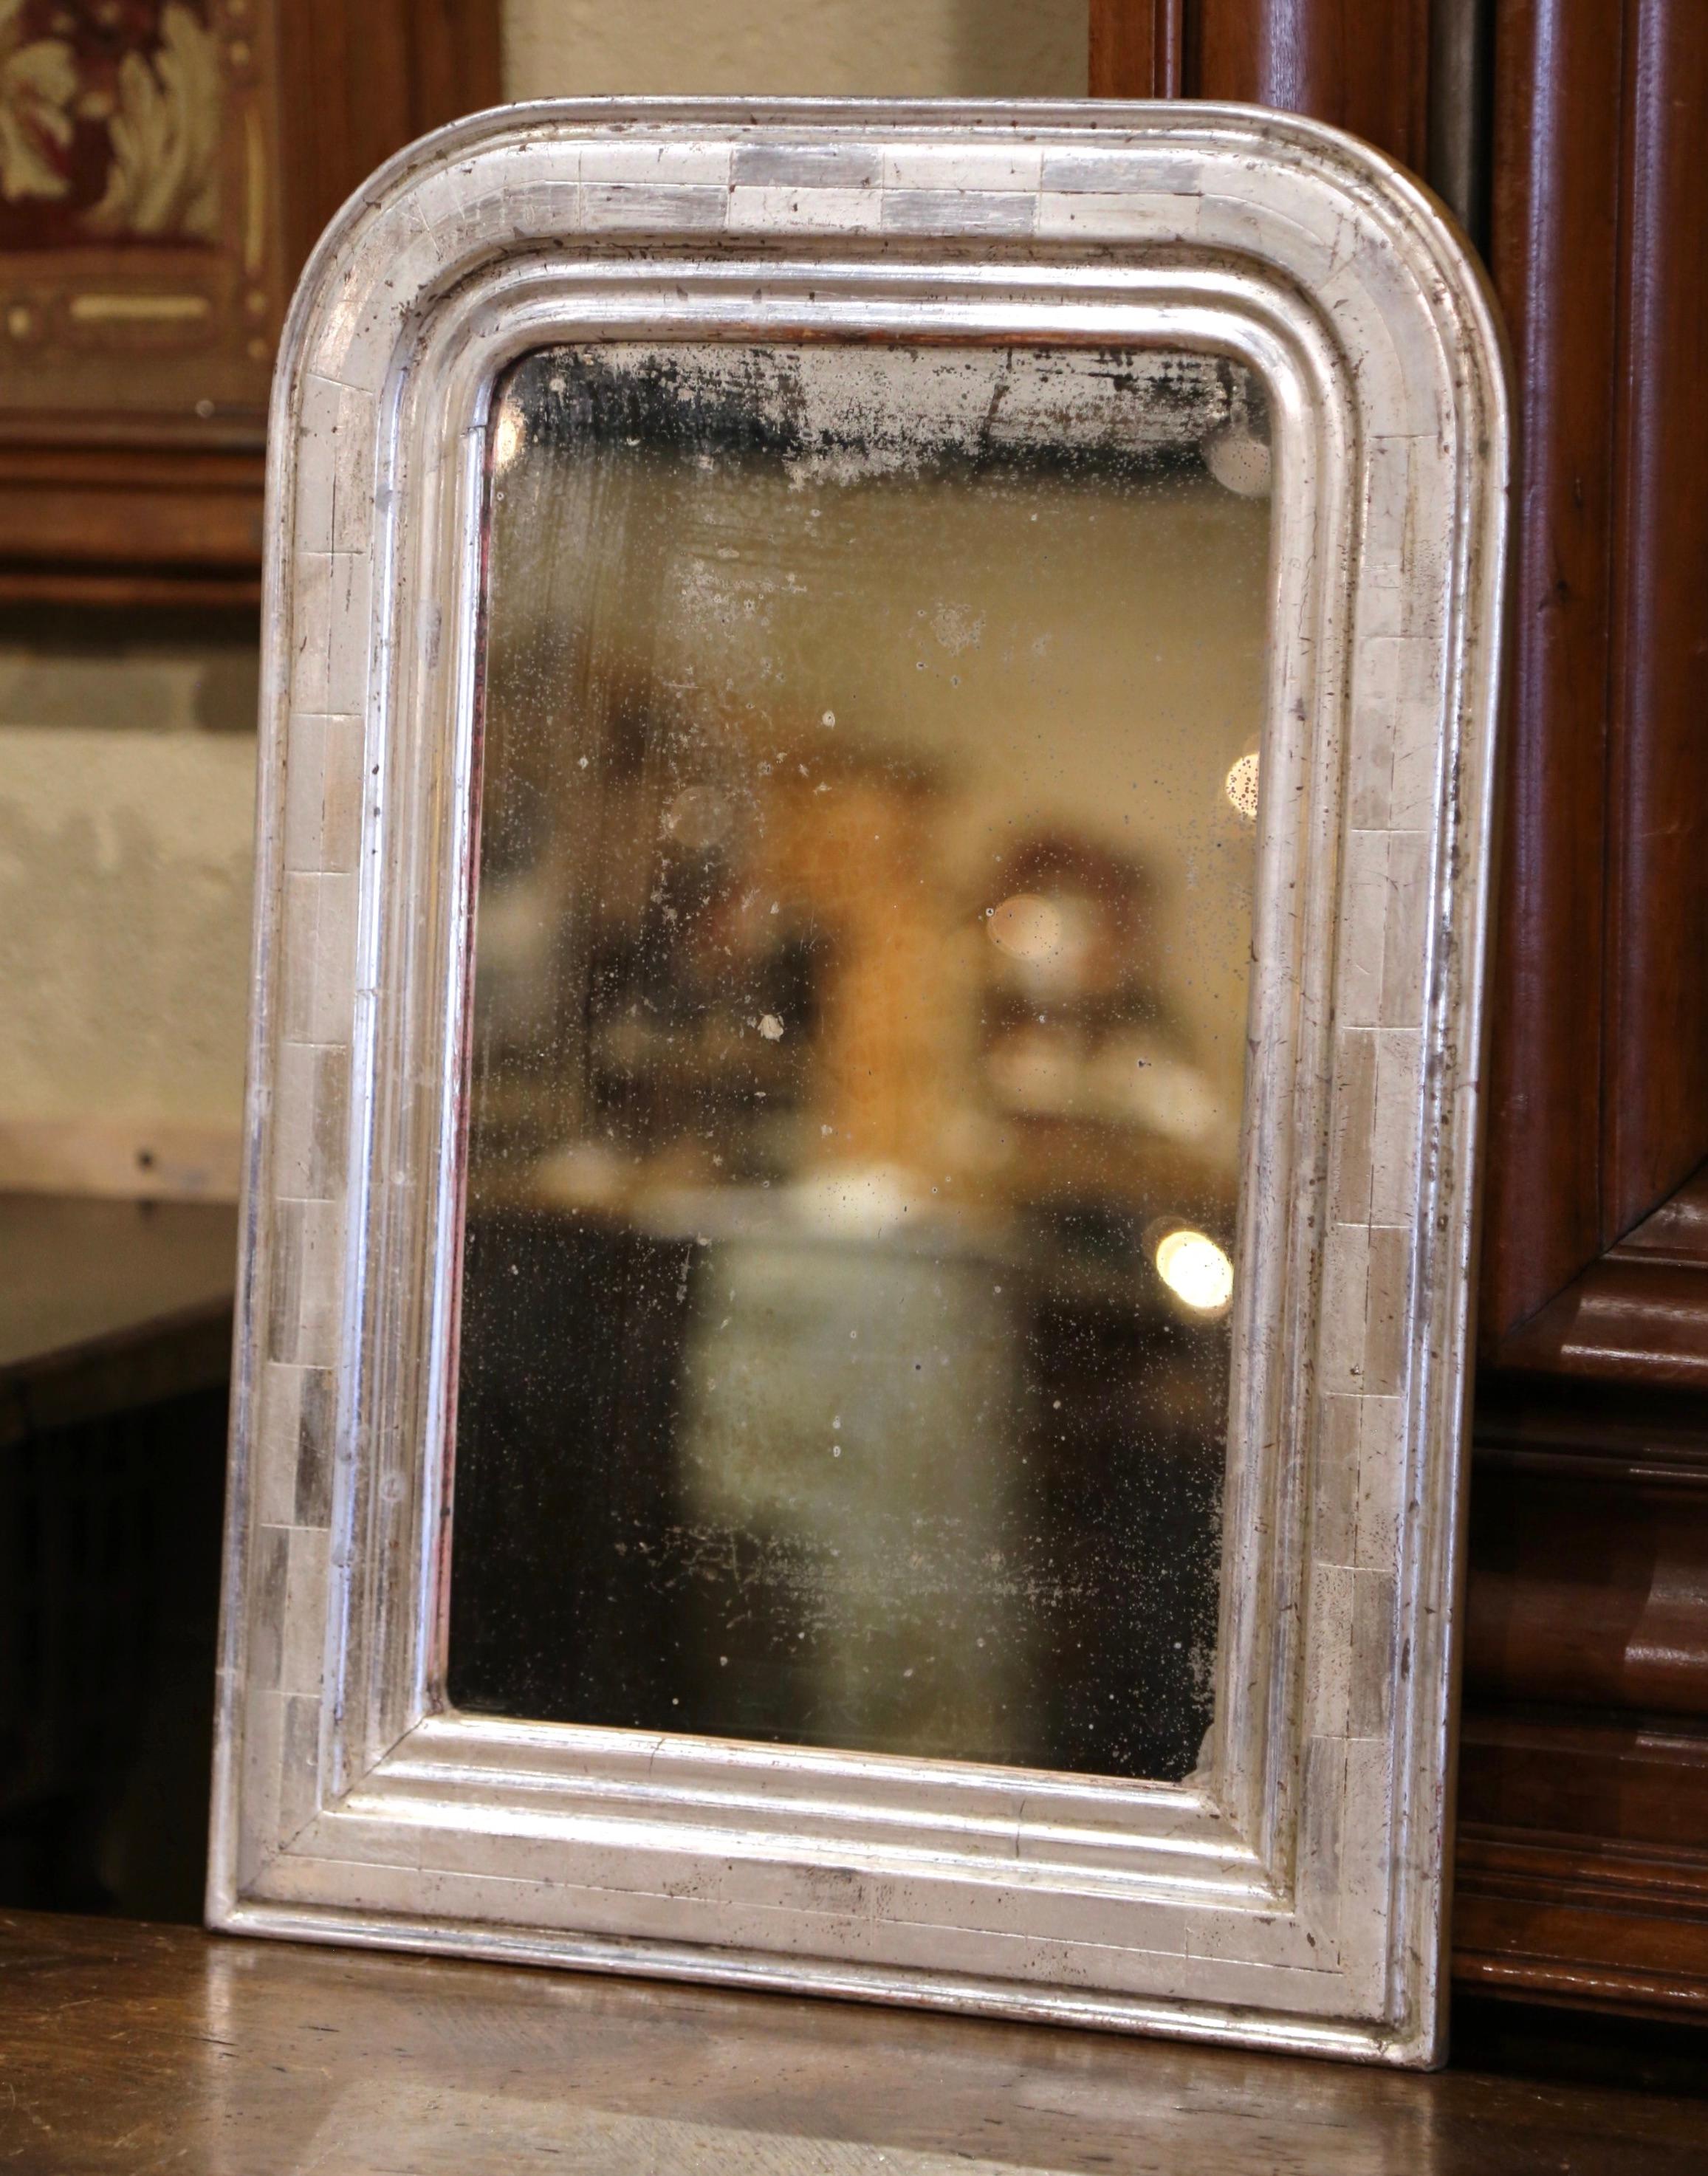 Der kleine antike Spiegel wurde um 1870 in der Region Burgund in Frankreich gefertigt und hat traditionelle, zeitlose Linien mit abgerundeten Ecken. Der elegante Rahmen ist mit einer luxuriösen Blattsilberoberfläche verziert, die durch ein